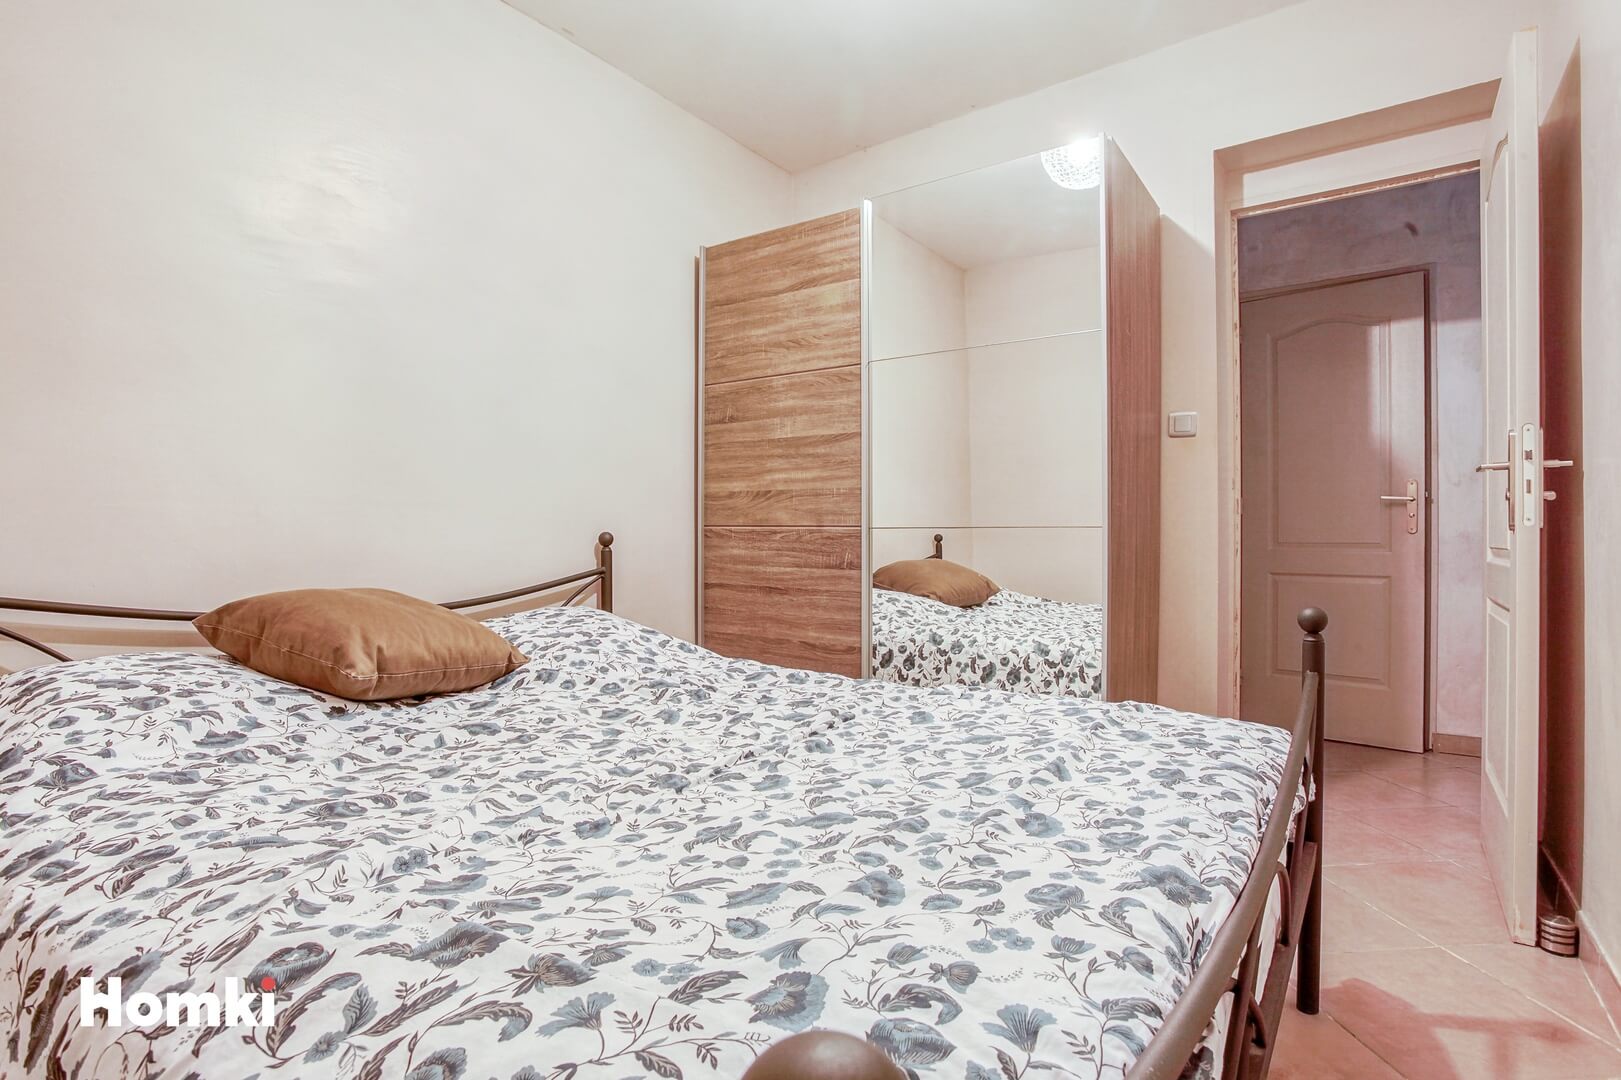 Homki - Vente Appartement  de 48.0 m² à Marseille 13002